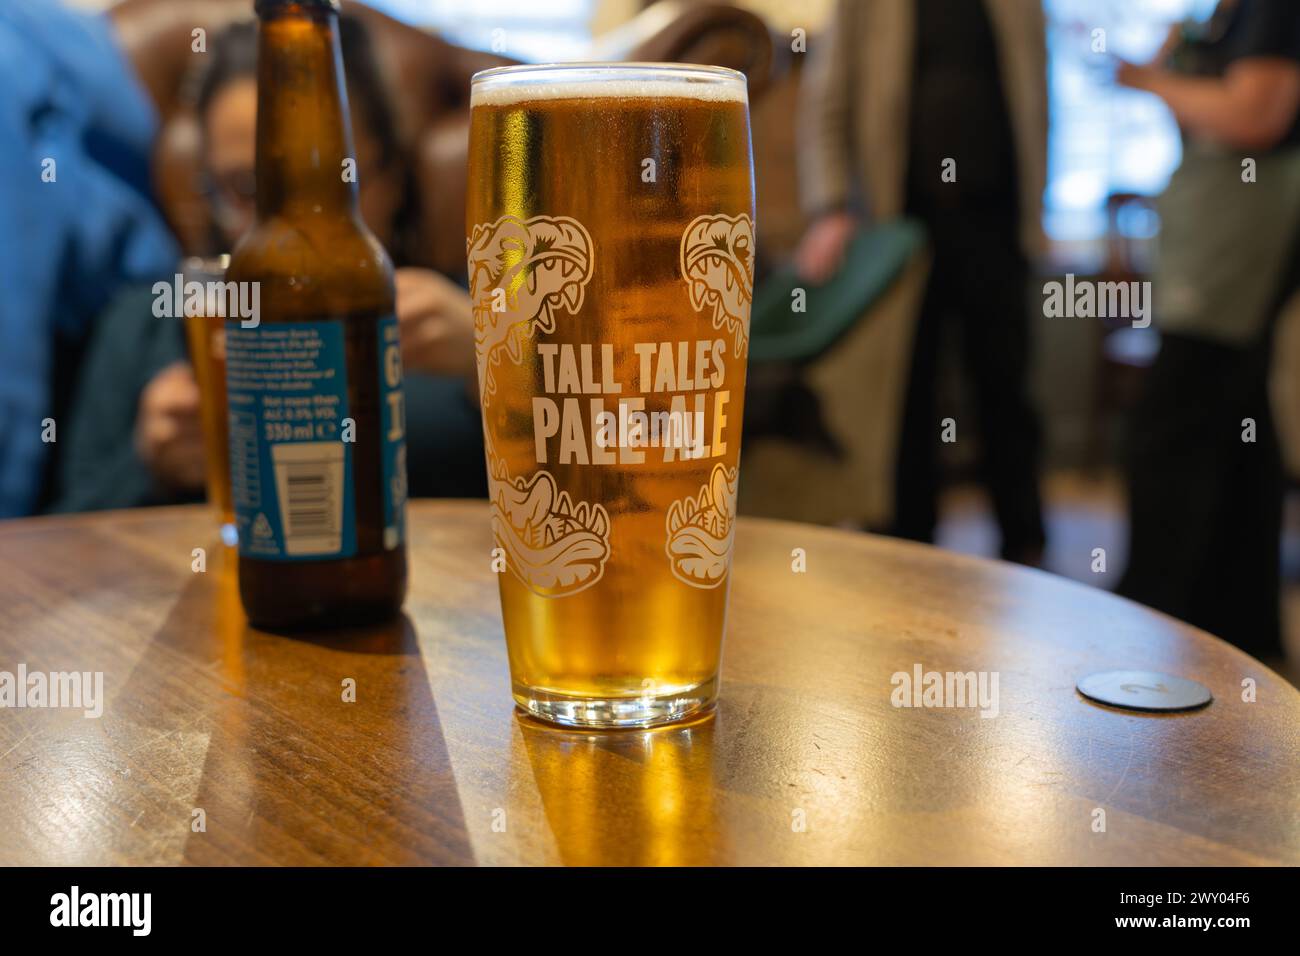 Ein Tall Tales Pale Ale in einem Glas auf einem Tisch in einem Pub. Tall Tales gehört der Butcombe Brewery, die schließlich der Liberation Group gehört. England Stockfoto